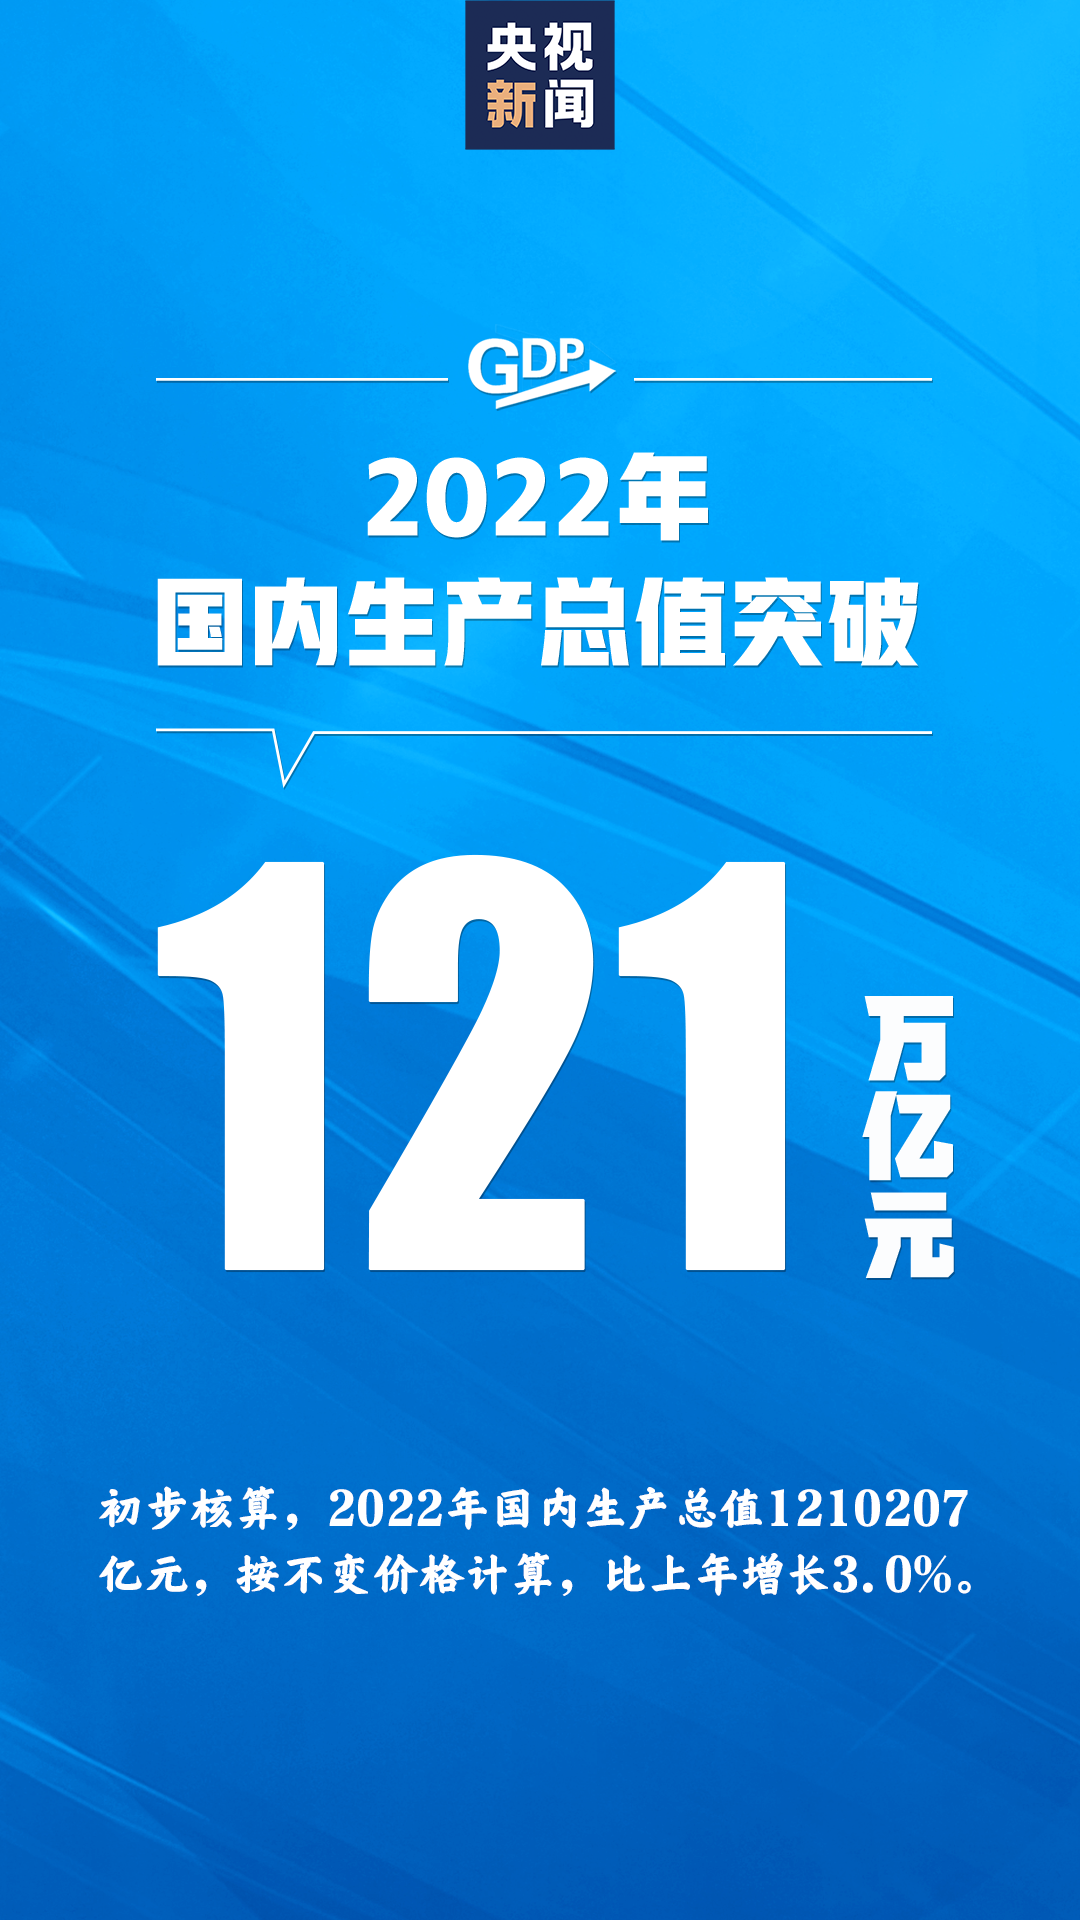 2022全年经济数据发布